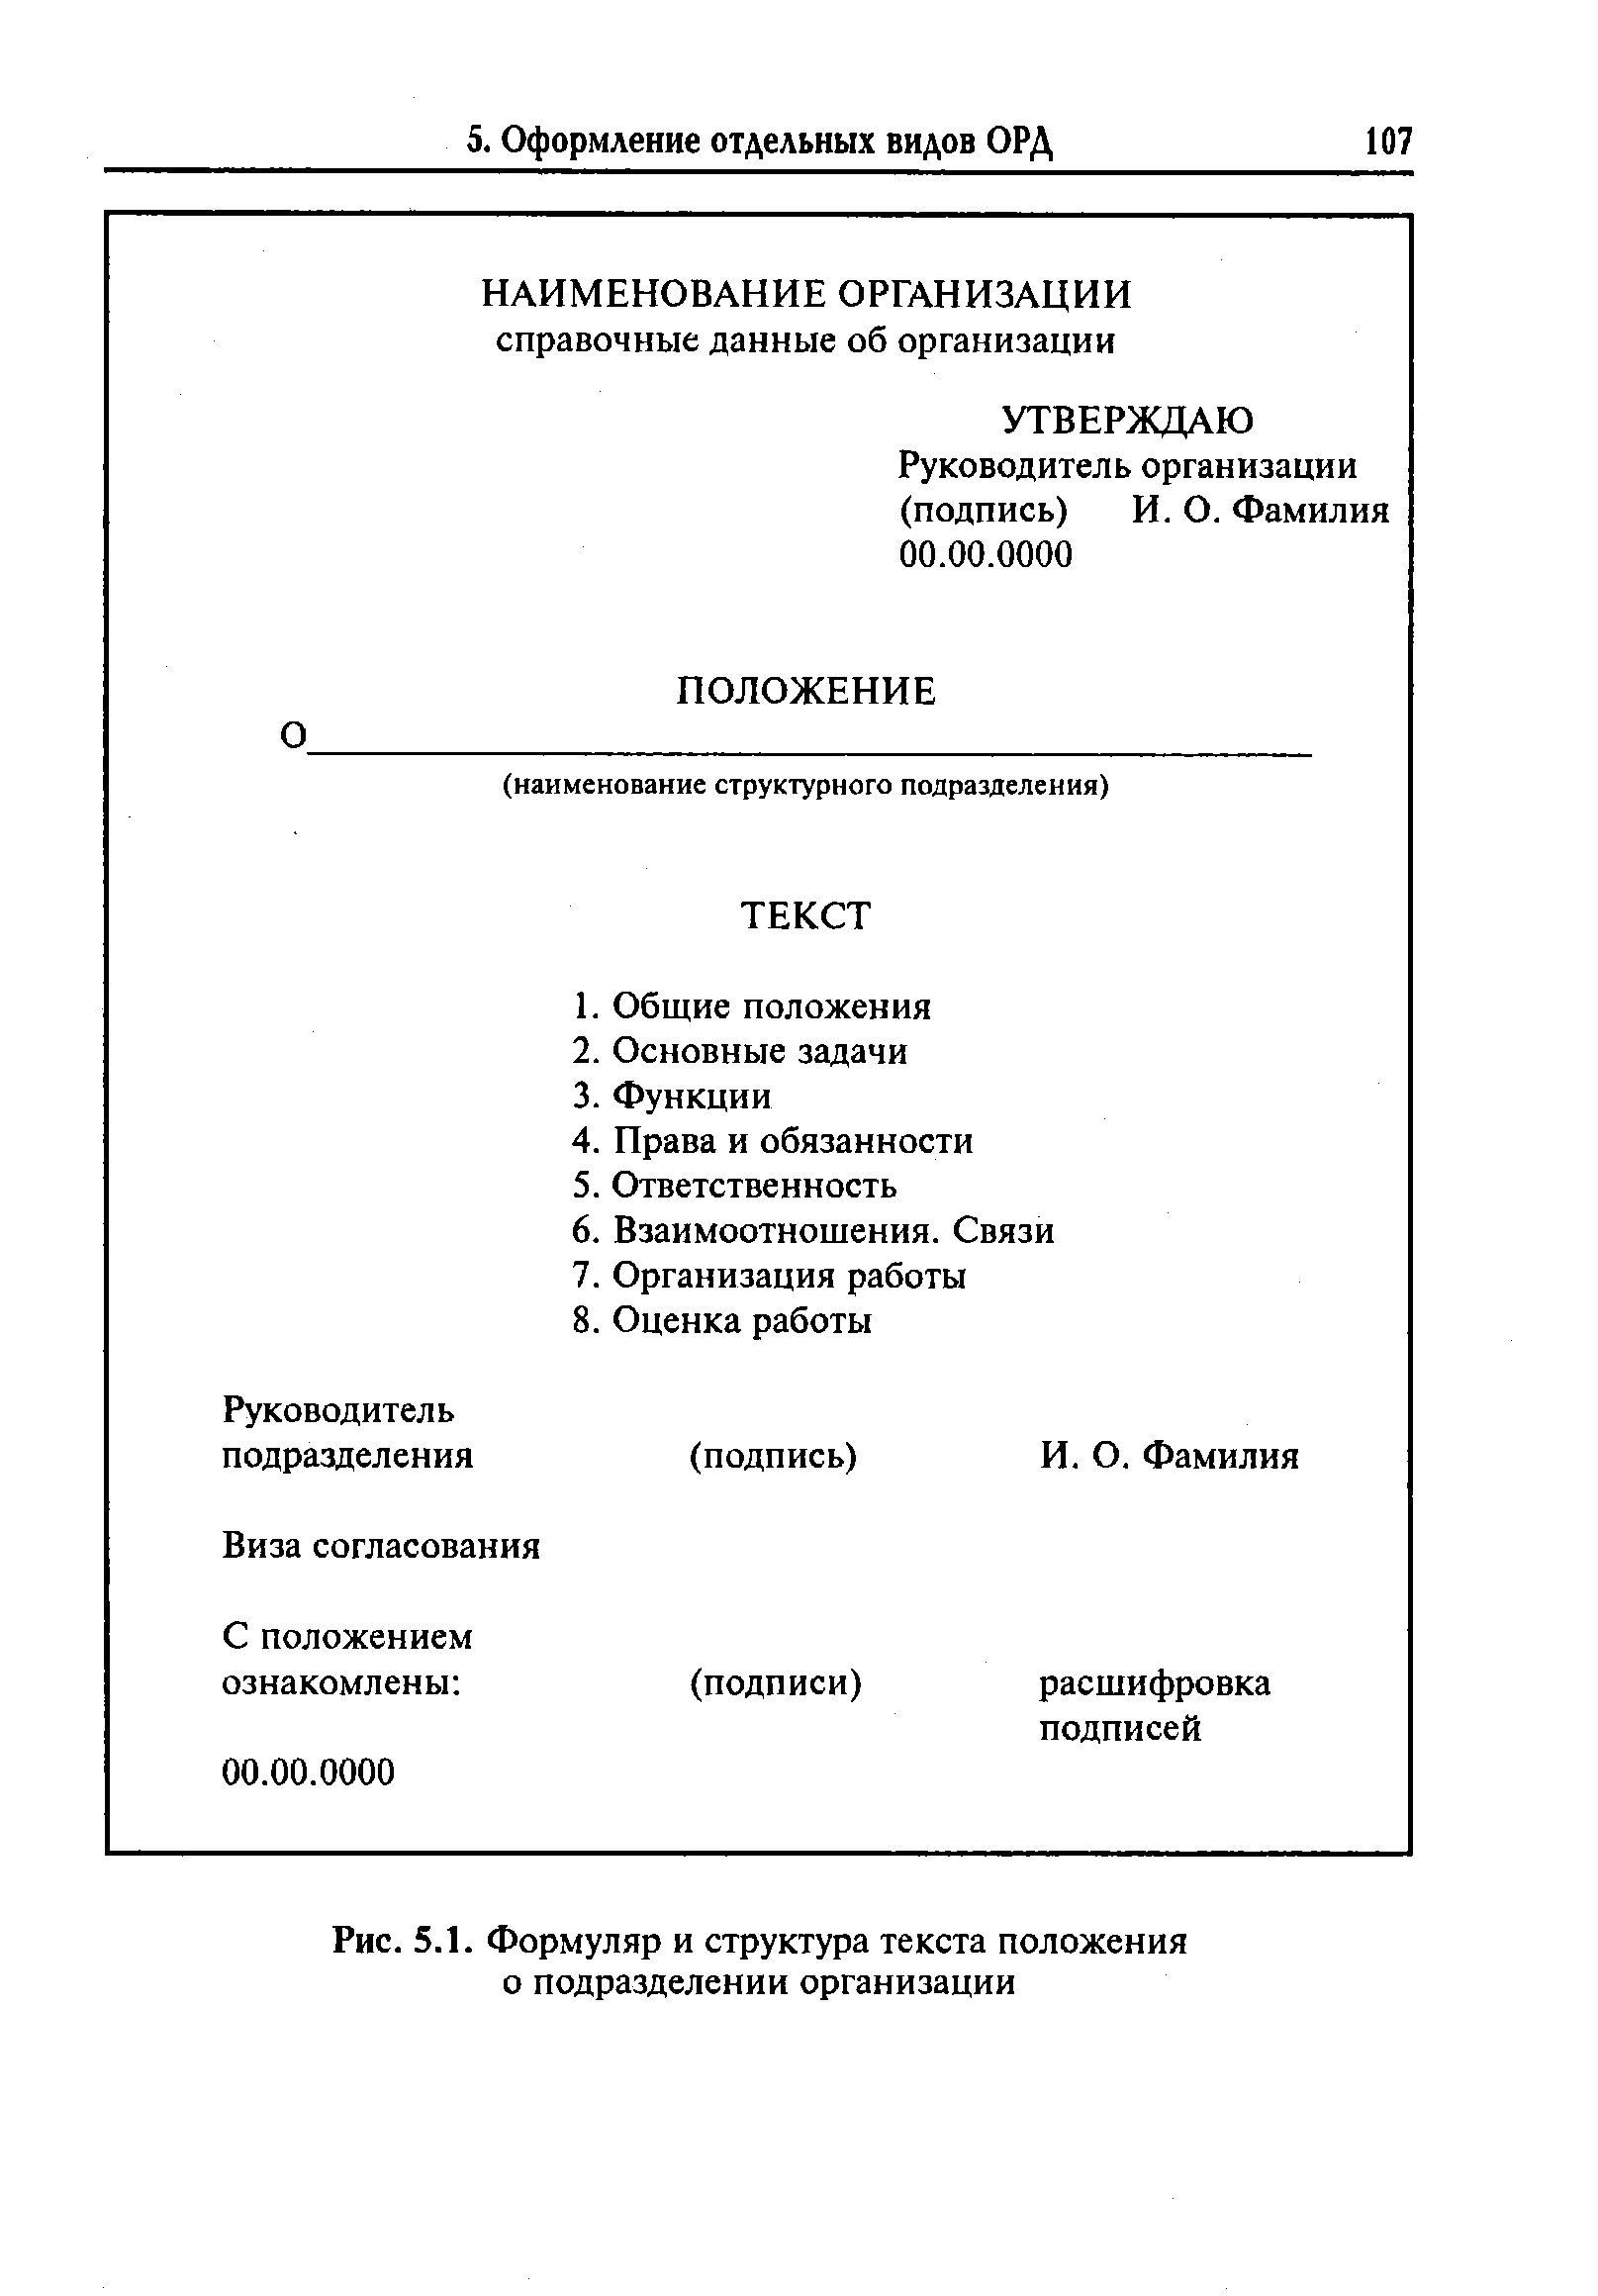 Документ об организации учреждения